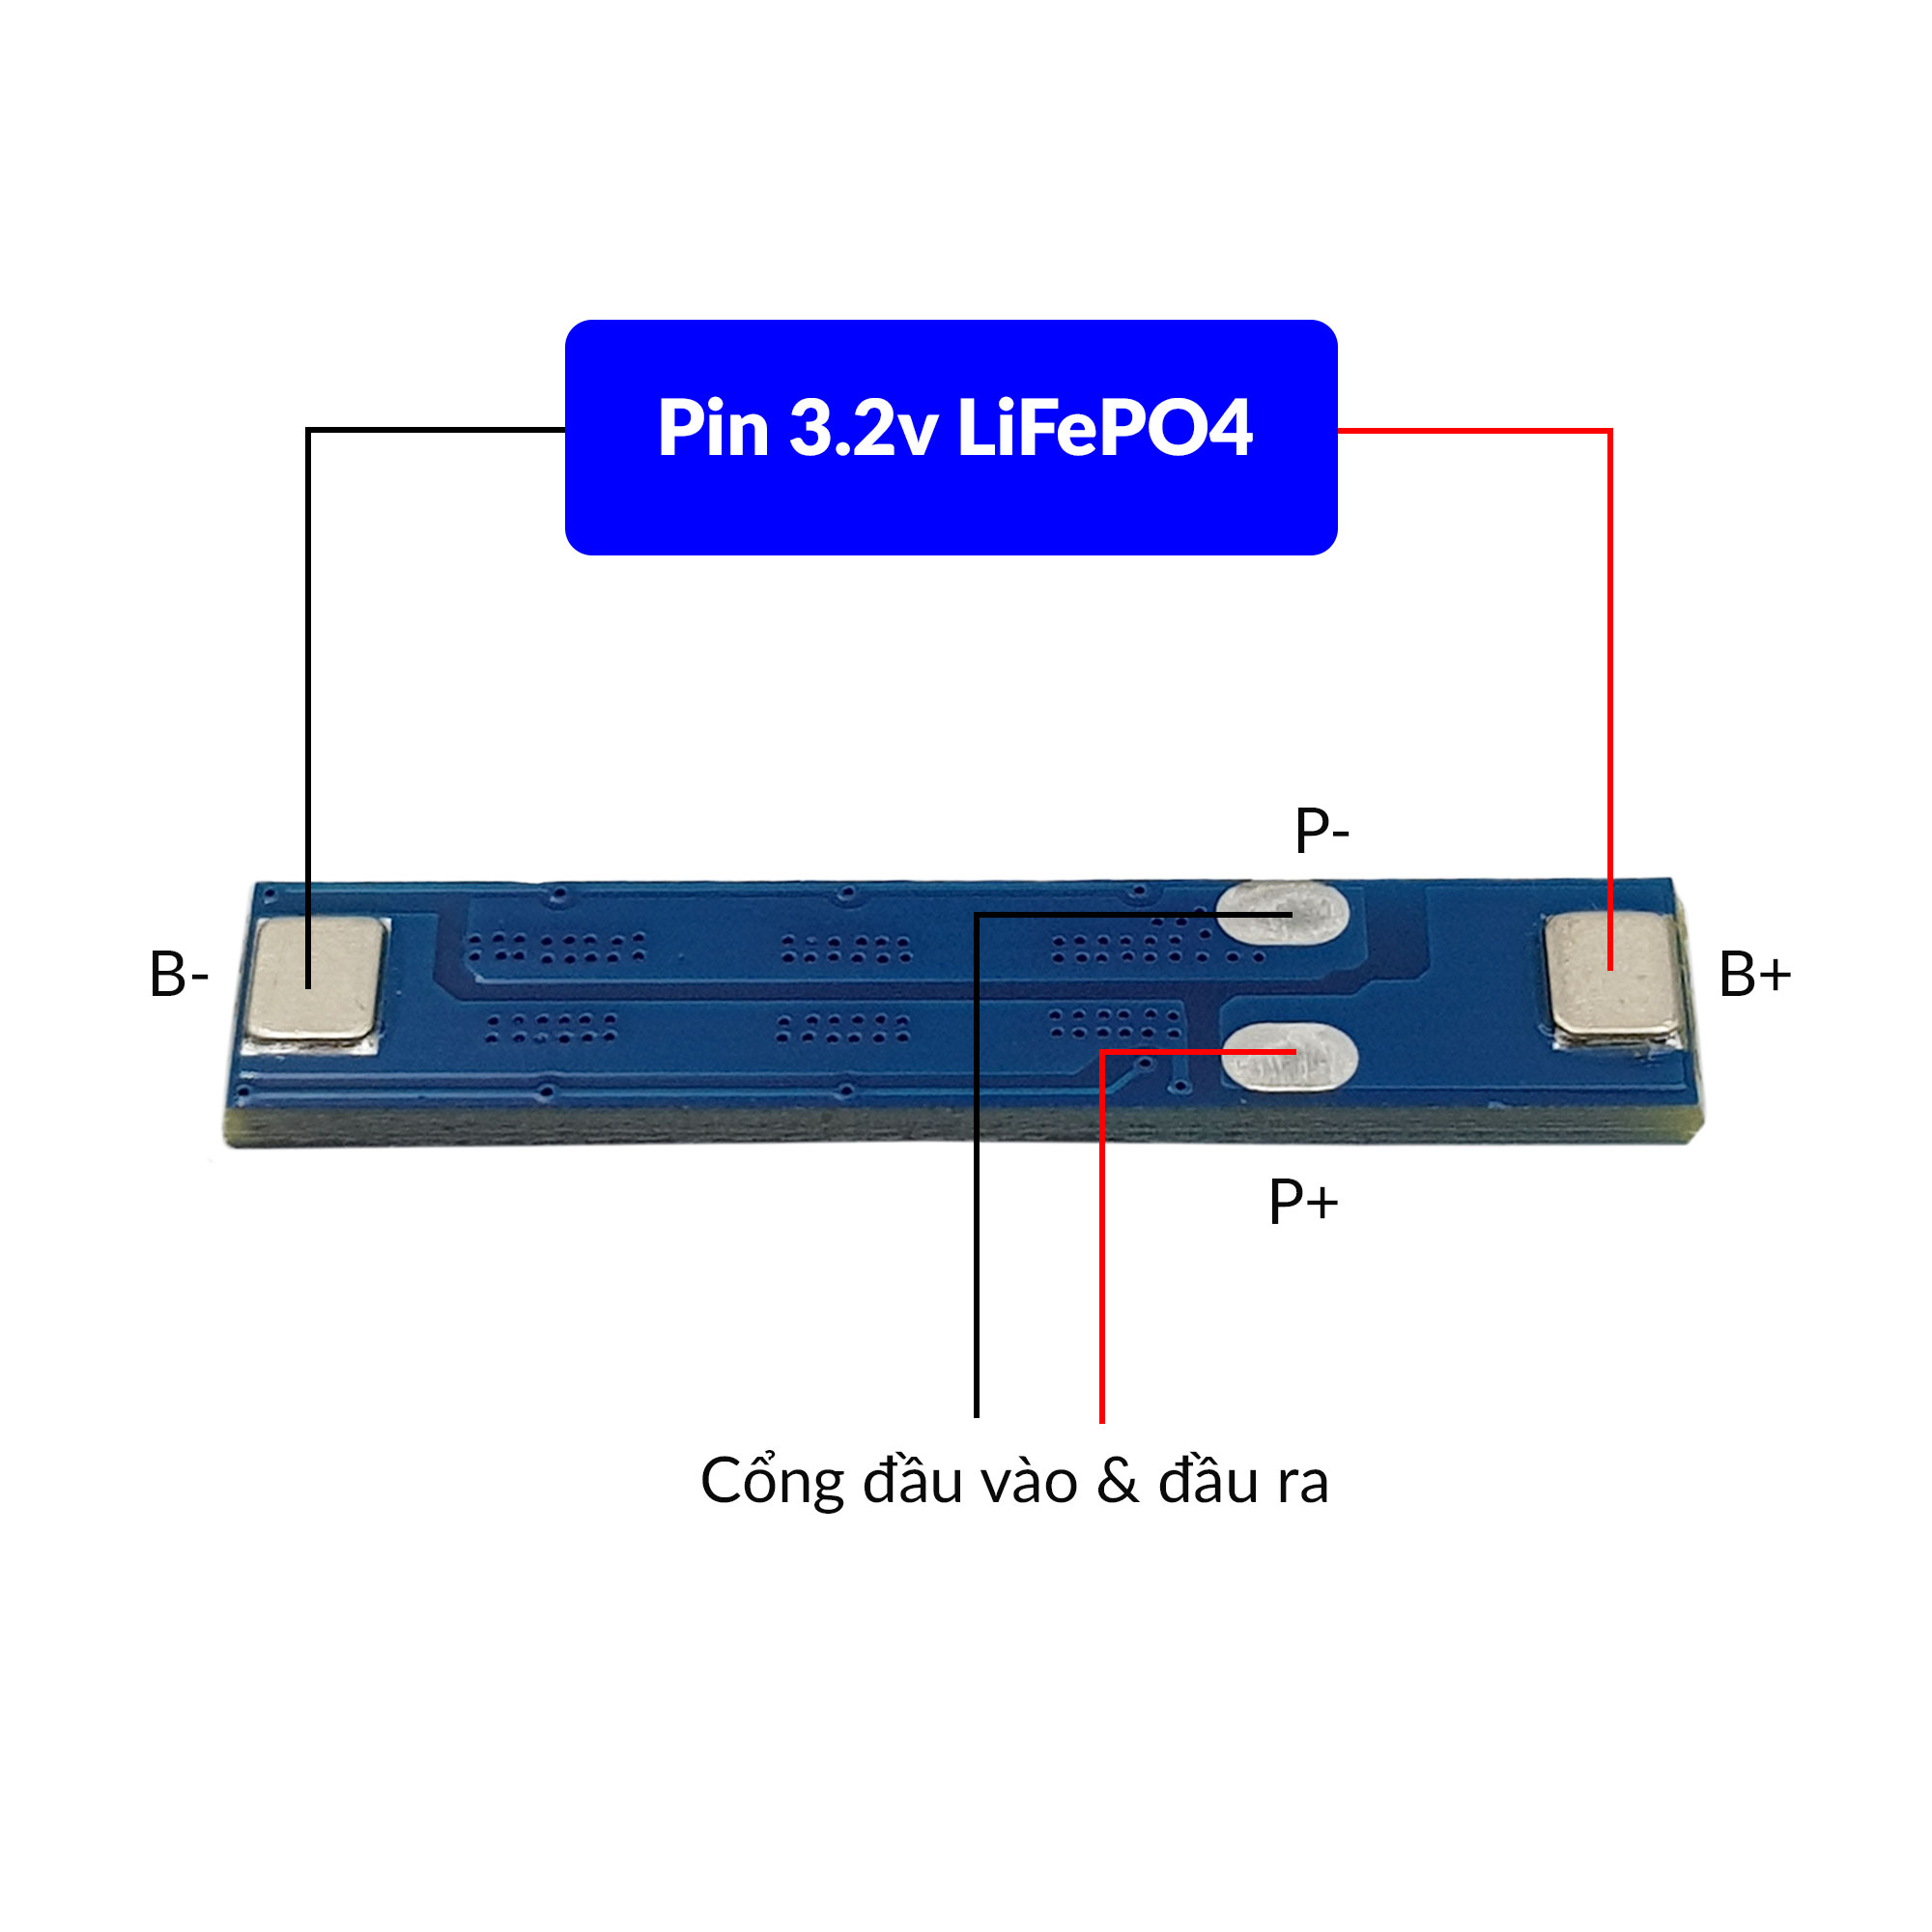 Sơ đồ đấu nối mạch sạc và bảo vệ pin 1S 3.2V LiFePO4